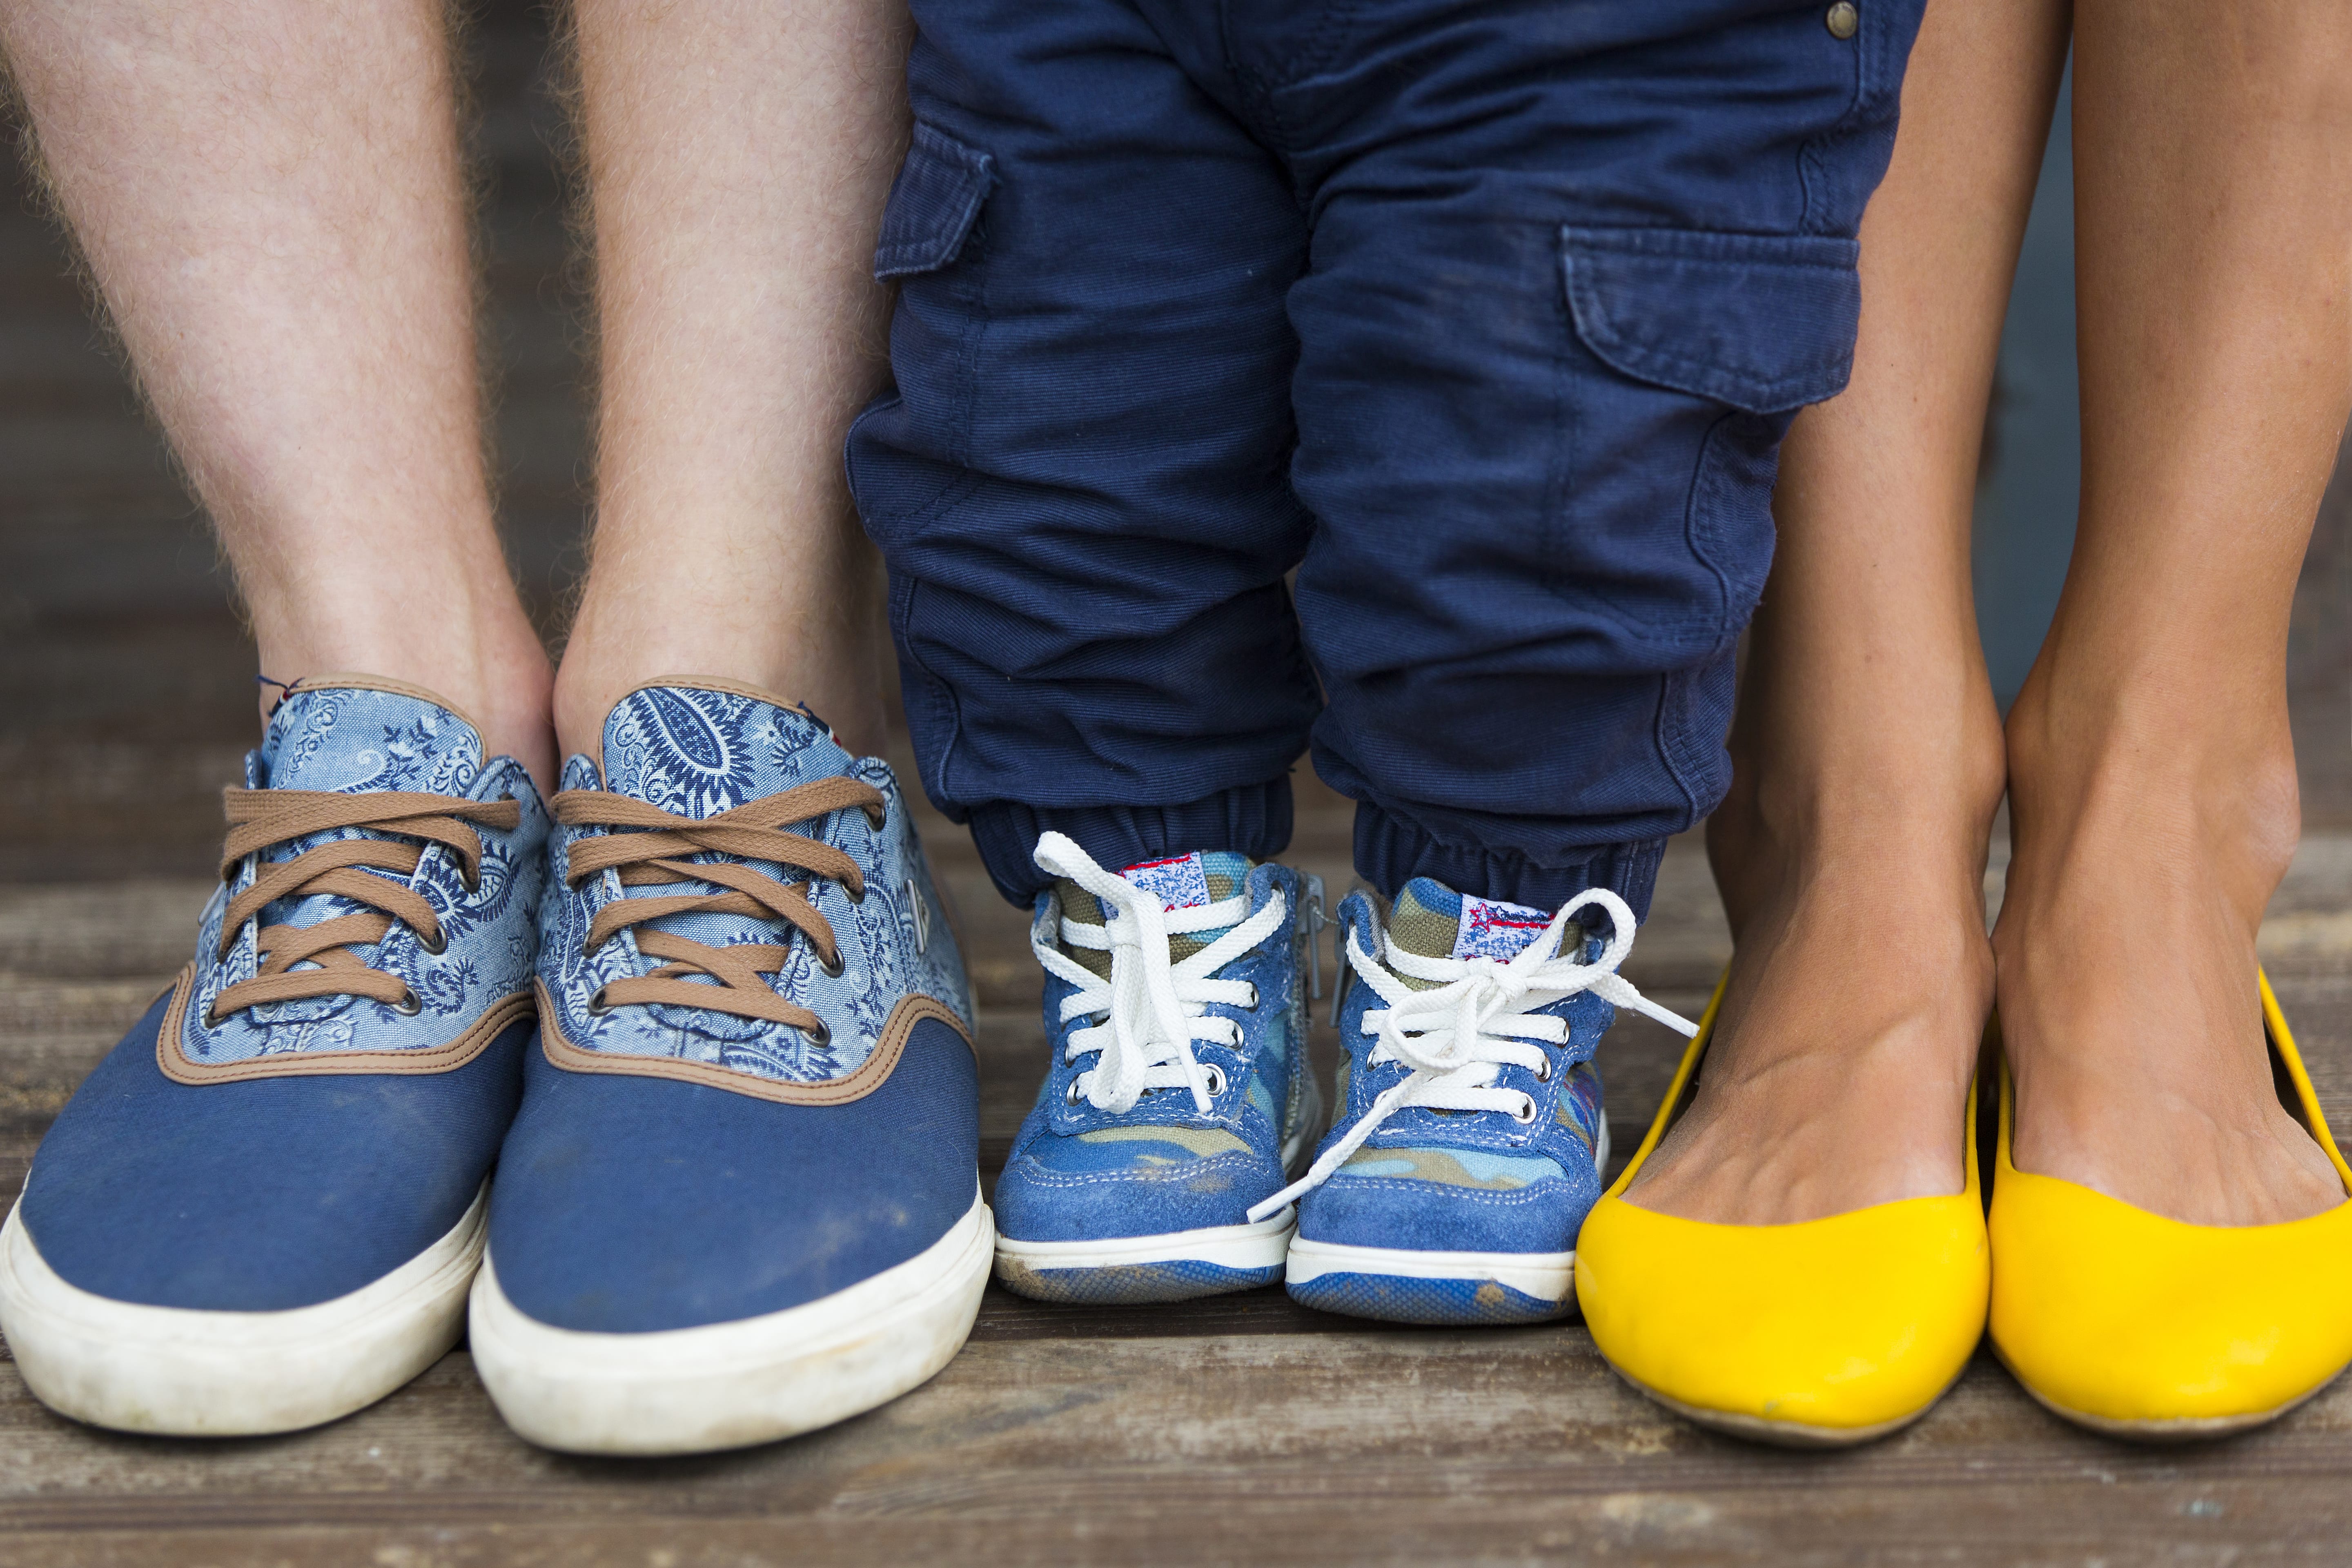 Schuhe färben ab – 2 Tipps die helfen